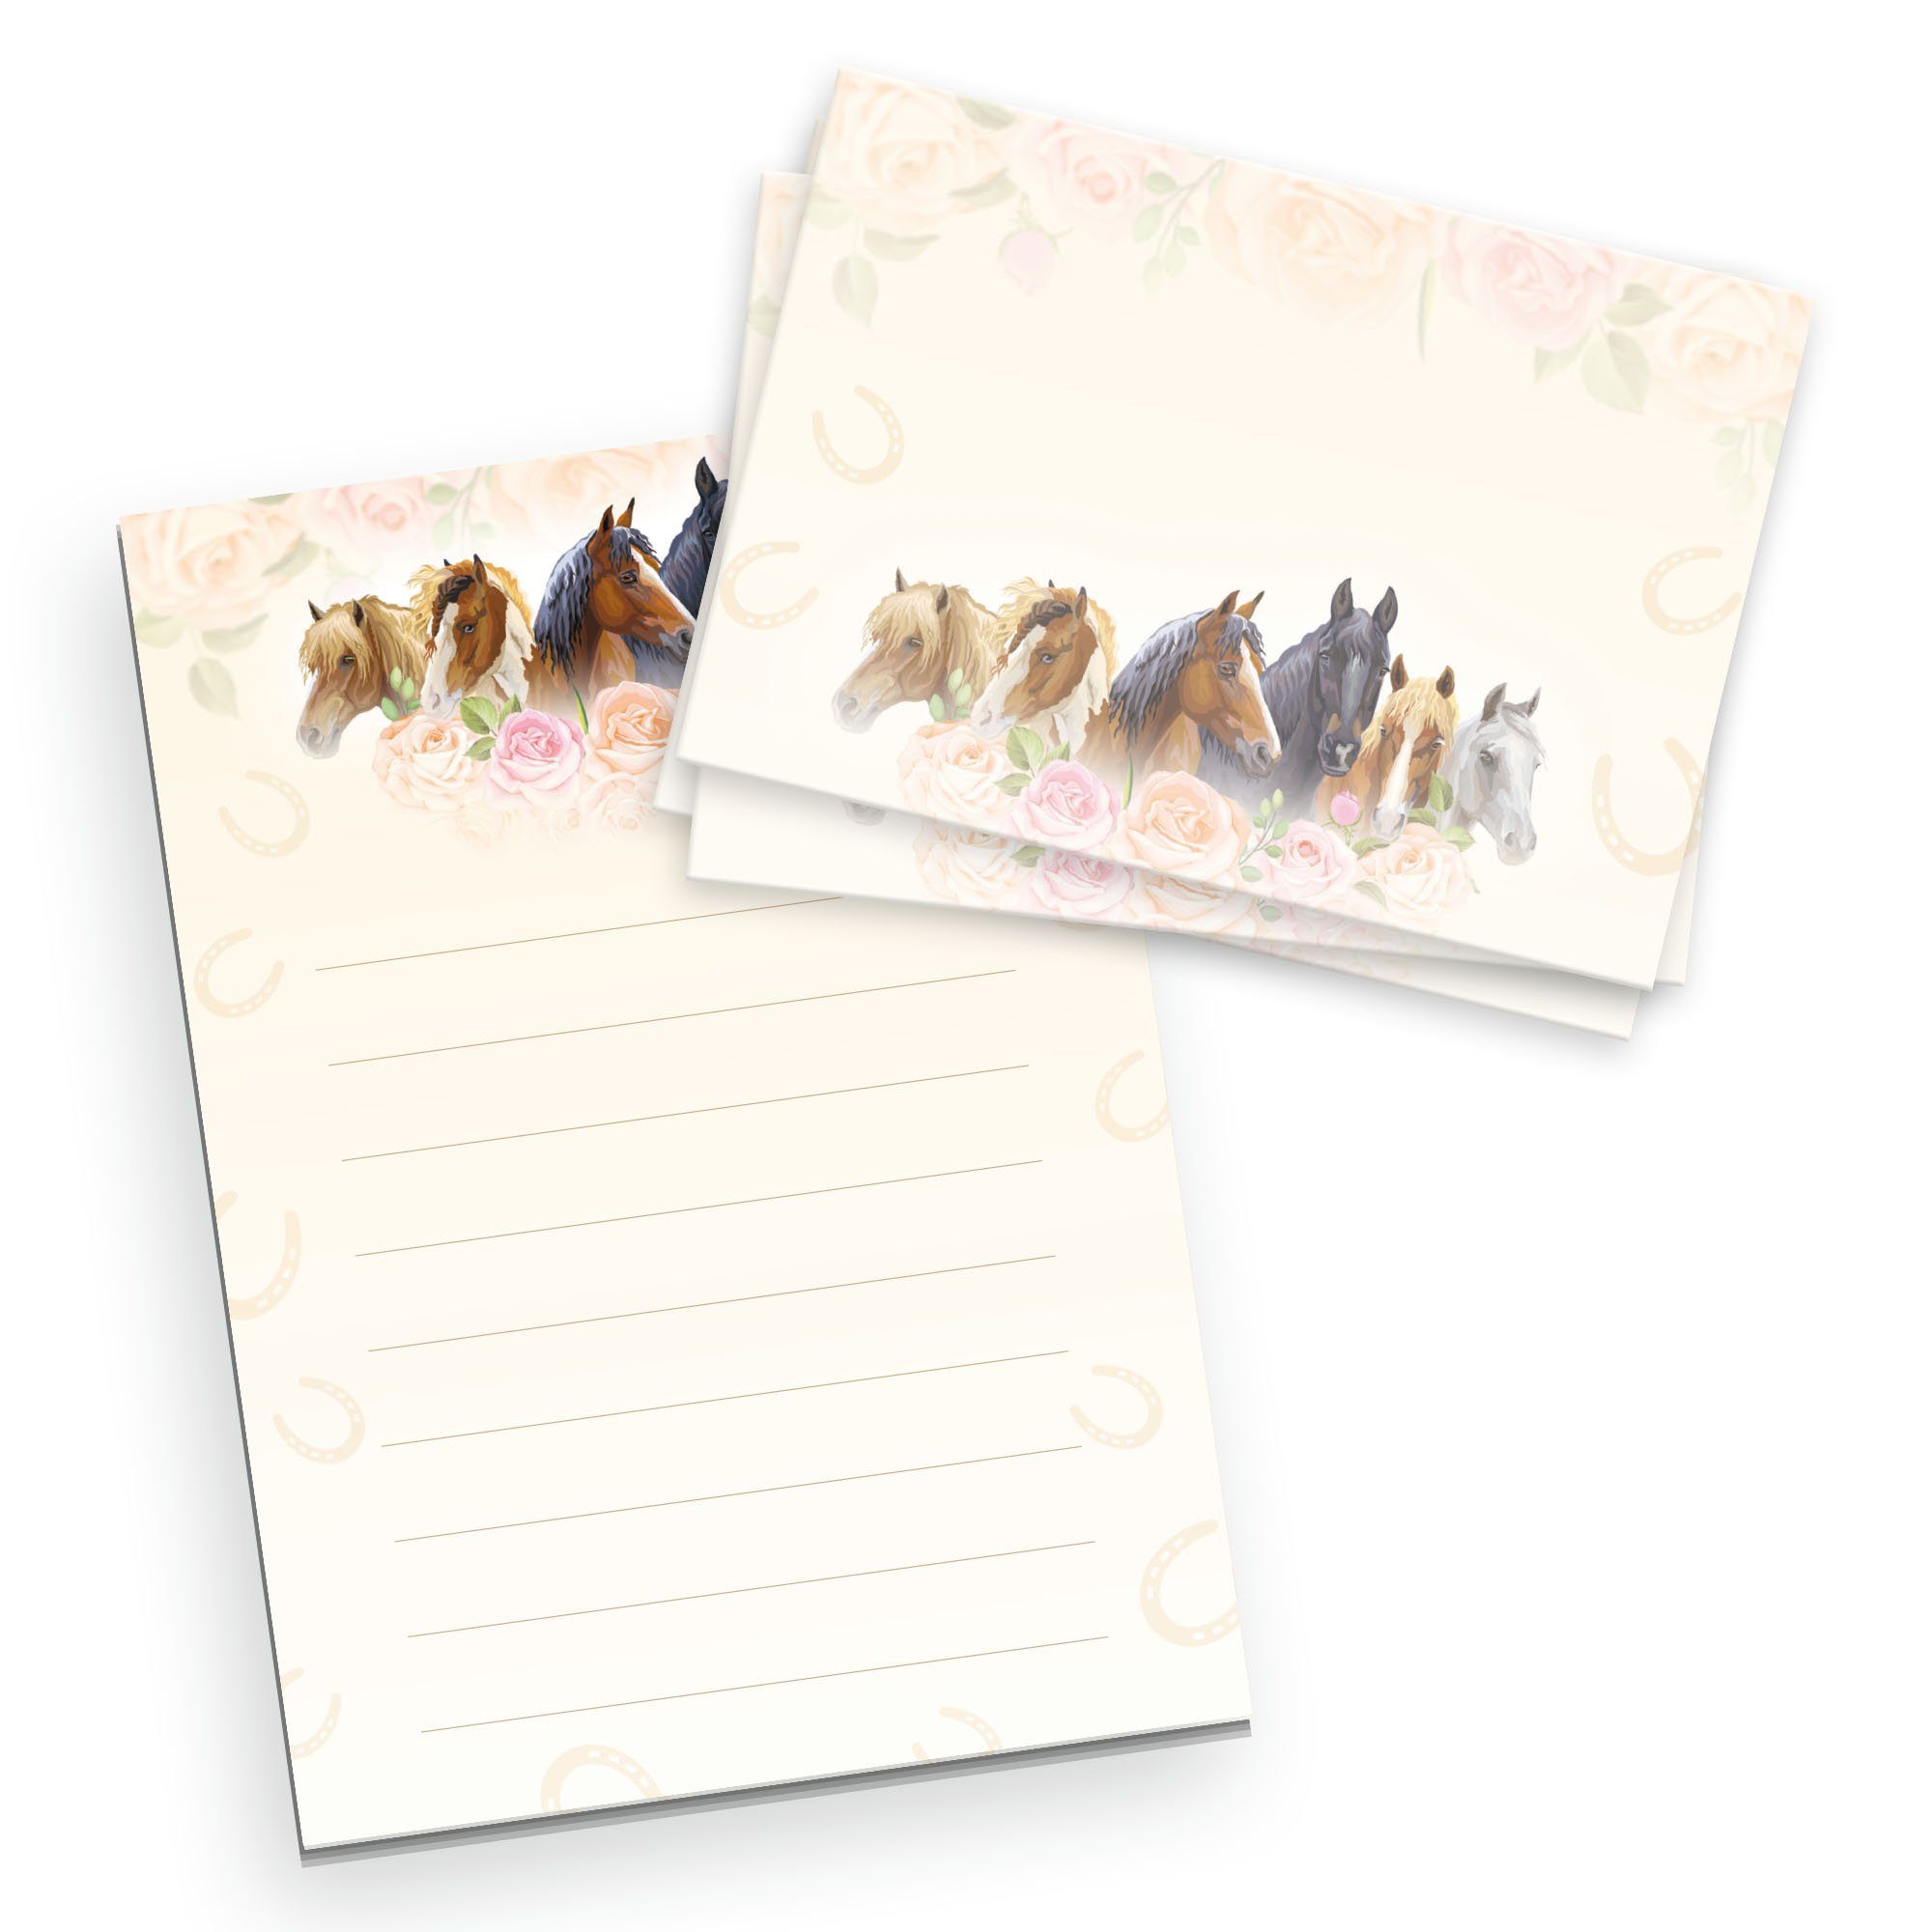 Kreative Feder Briefpapier Briefpapier-Set für Kinder Briefpapier-Block DIN A5 mit 50 Blatt, inkl. 20 Umschlägen, Briefpapier mit Linien, Brief, Post, Schreiben Set Pferde & Rosen